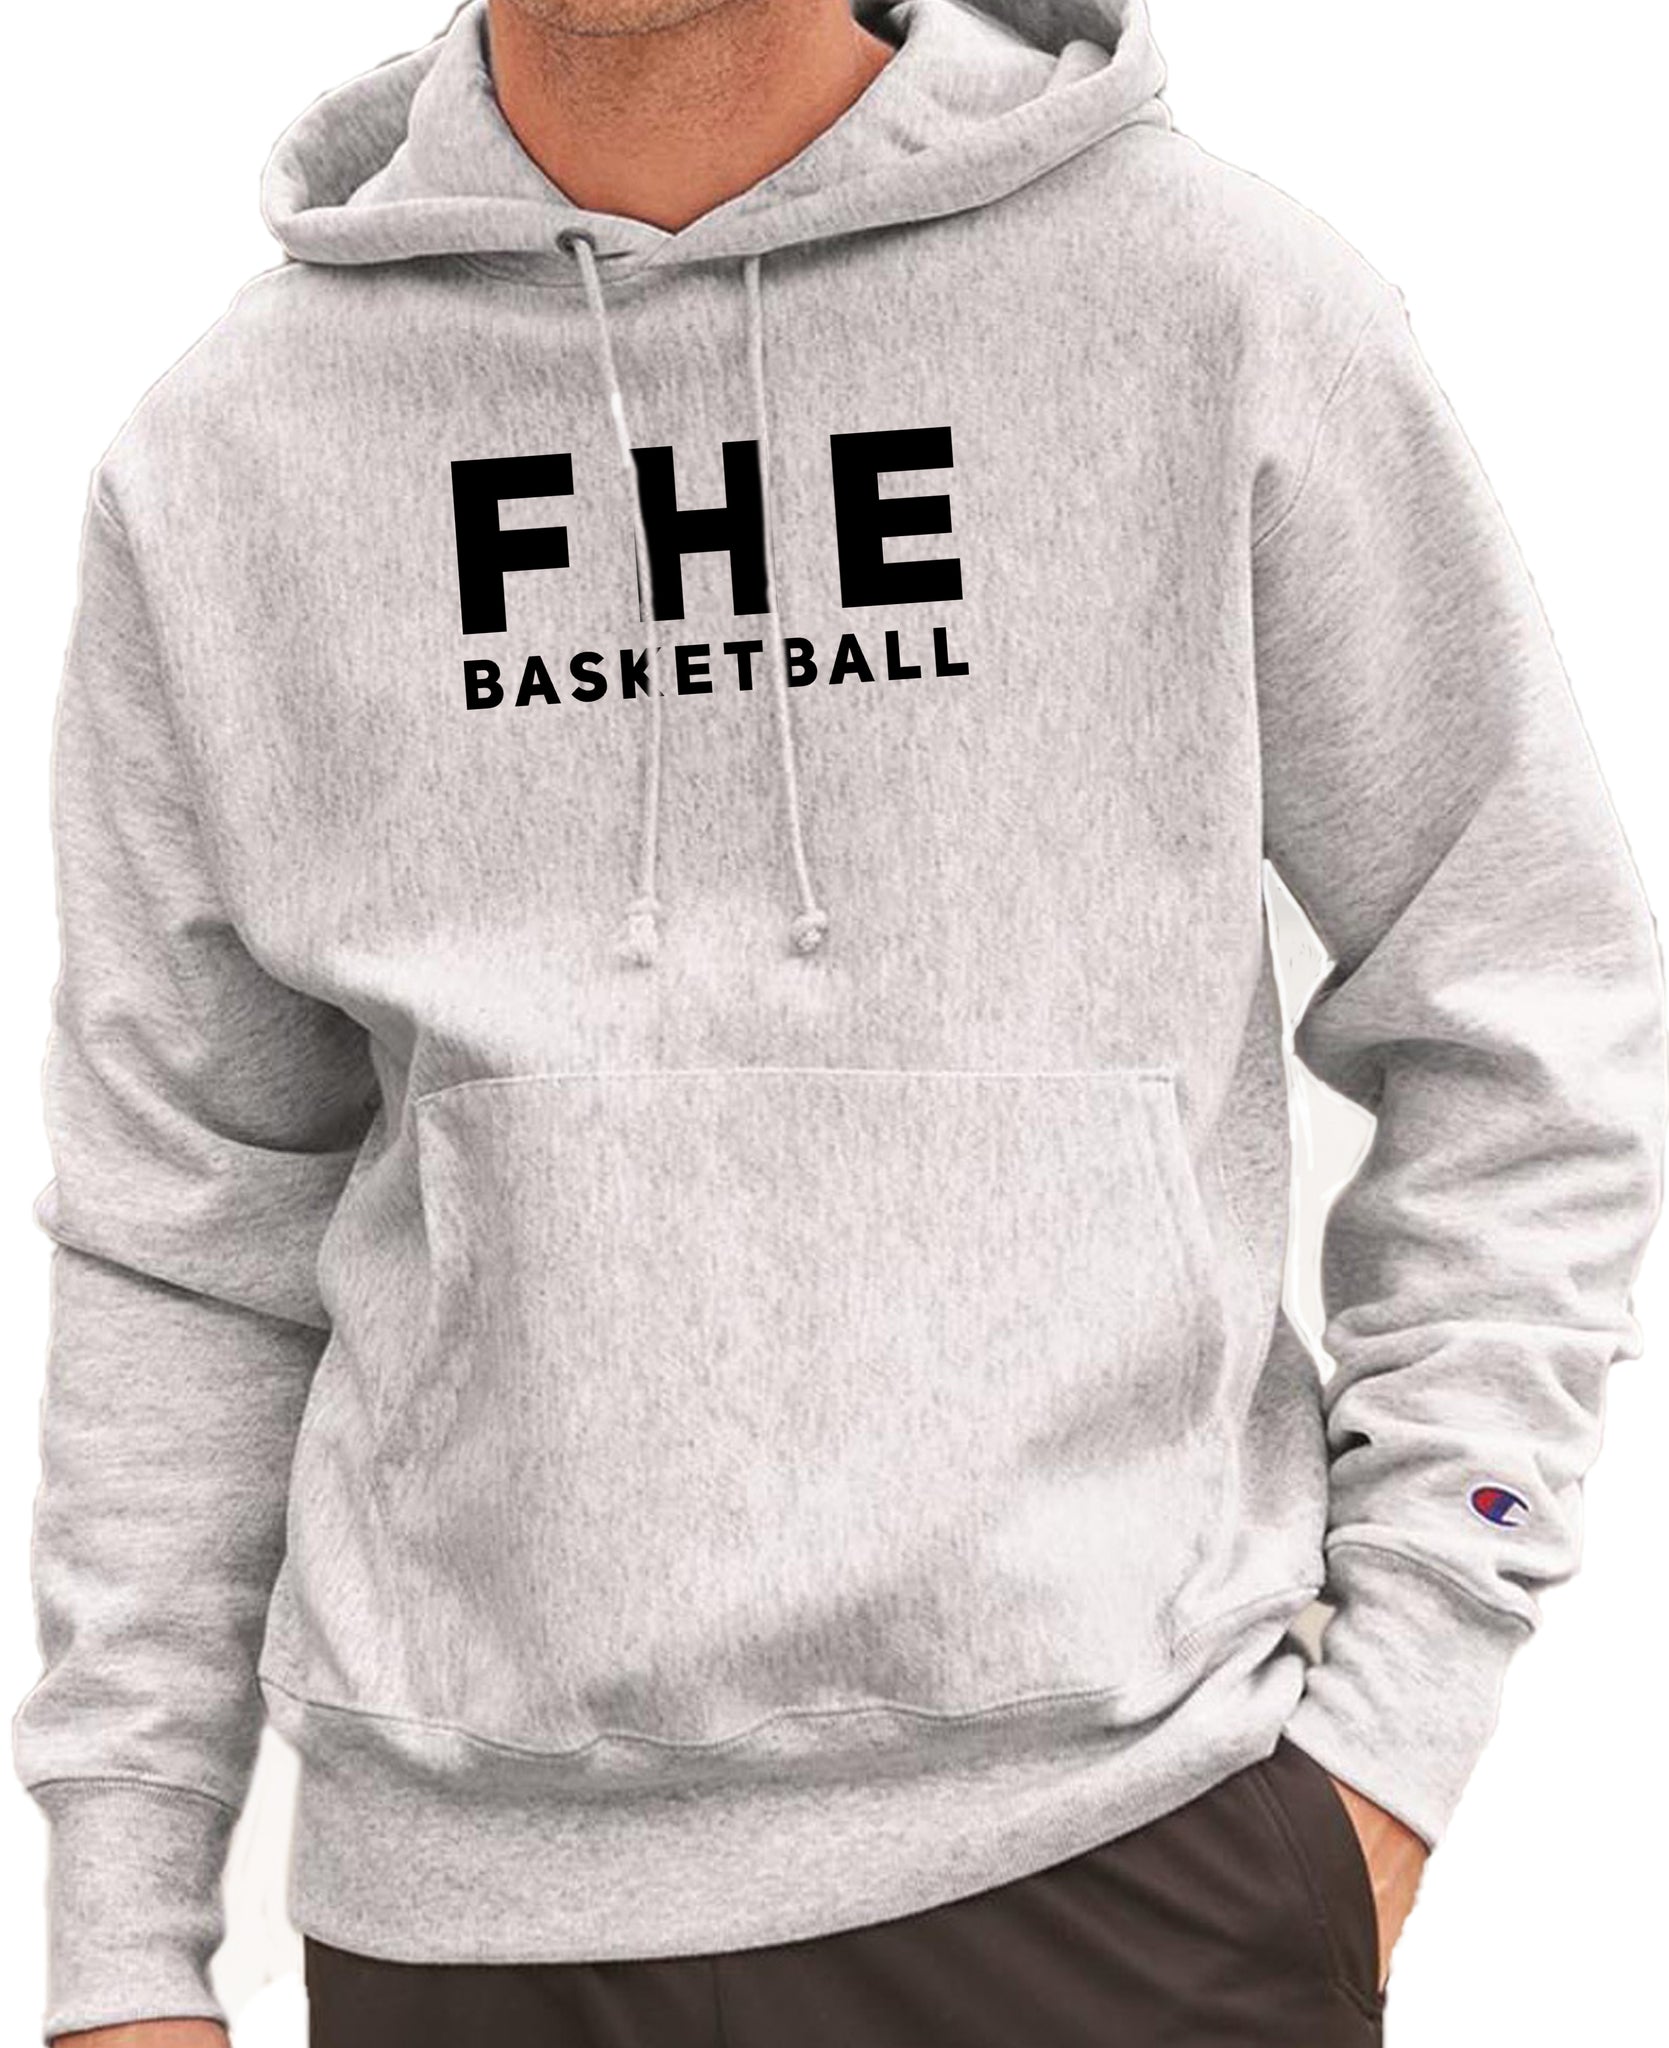 FHE BASKETBALL SIMPLE Reverse Weave Champion Hoodie Sweatshirt